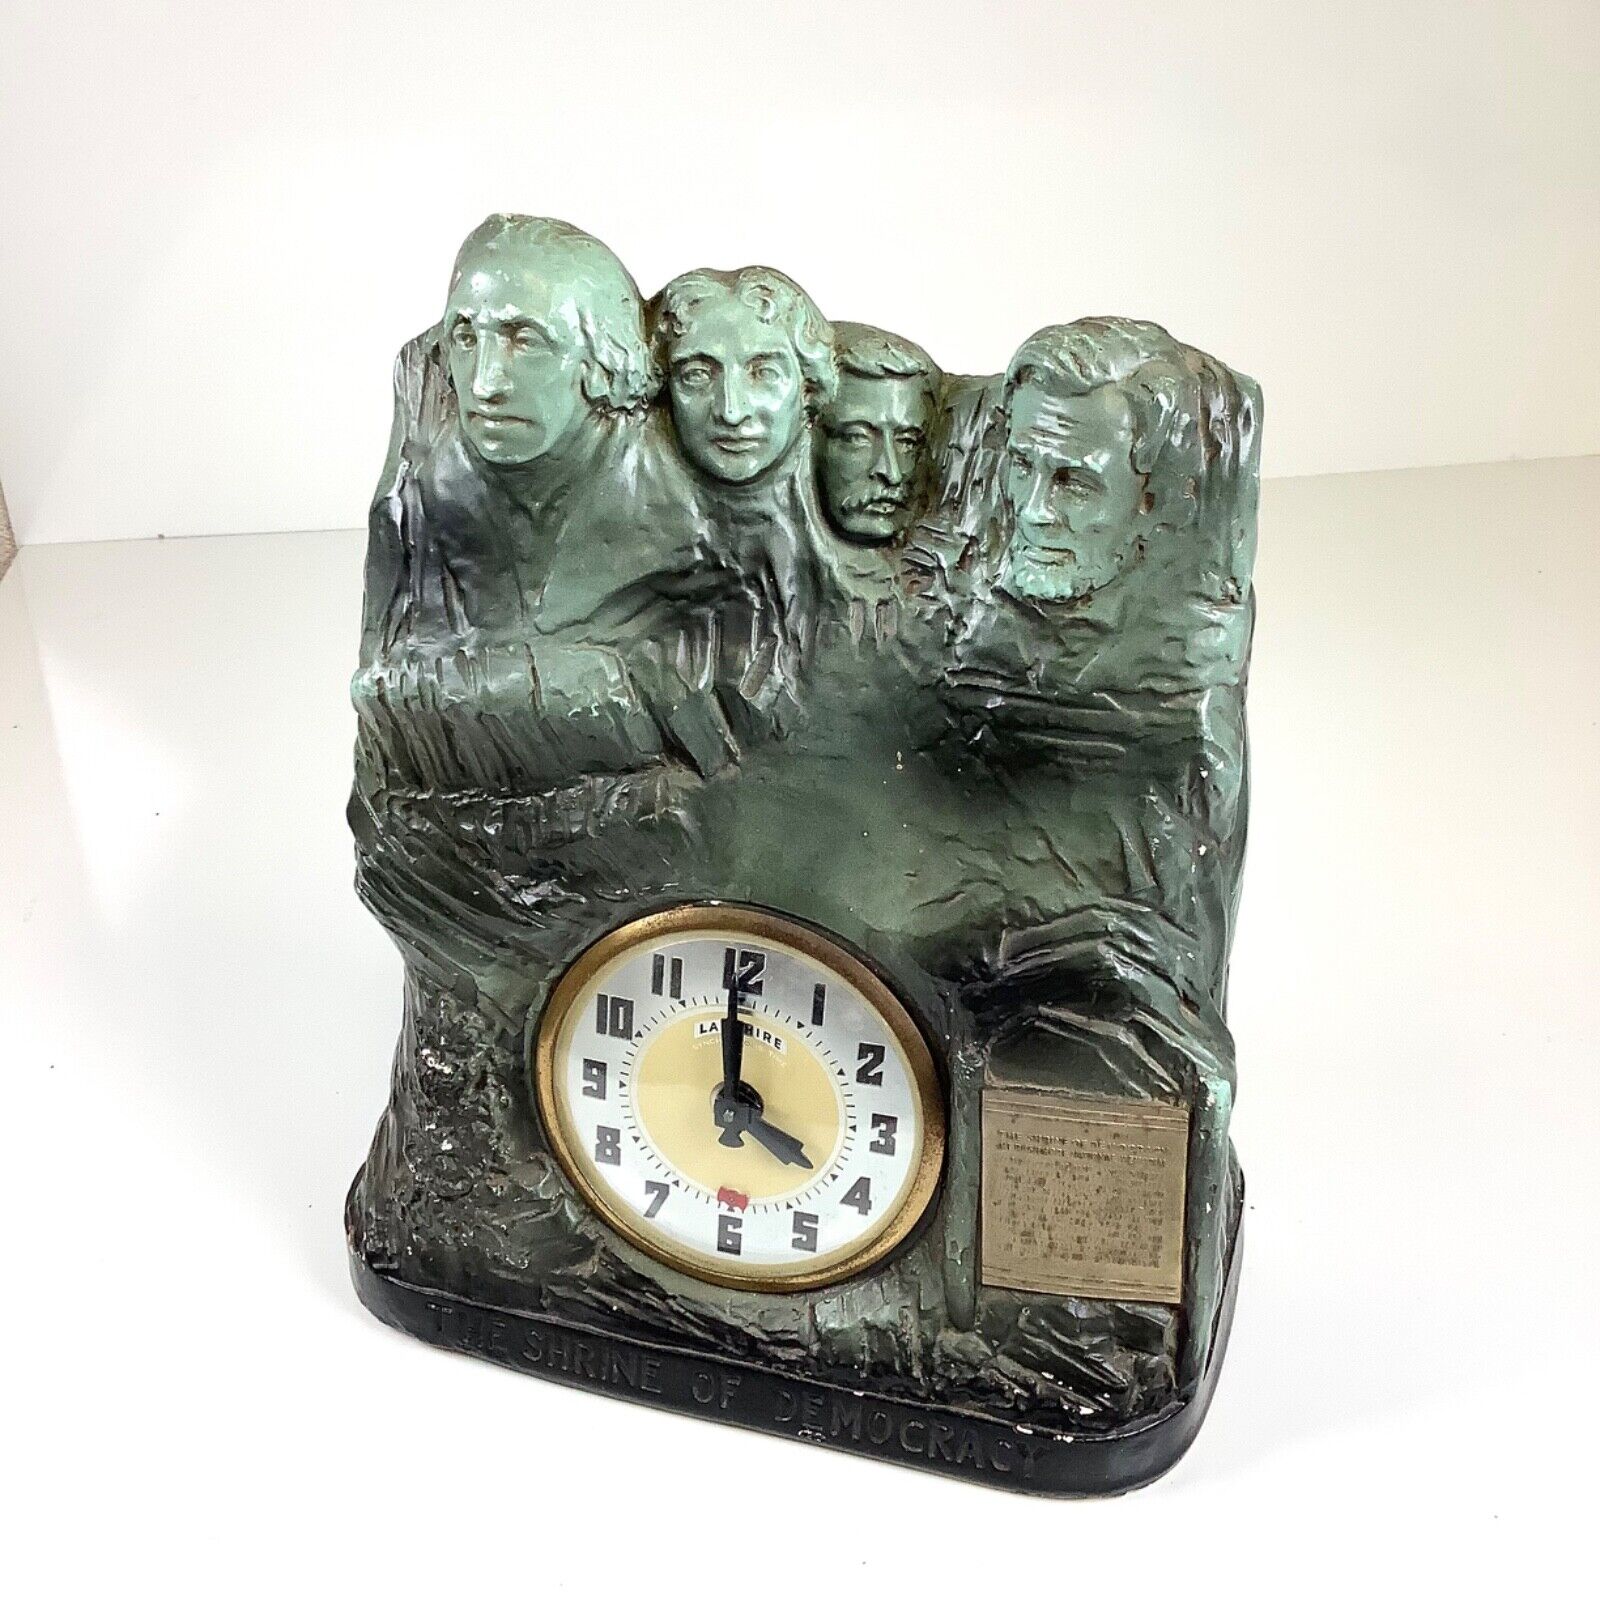 Vintage Chalkware Lanshire Mount Rushmore Clock Shrine of Democracy UNTESTED